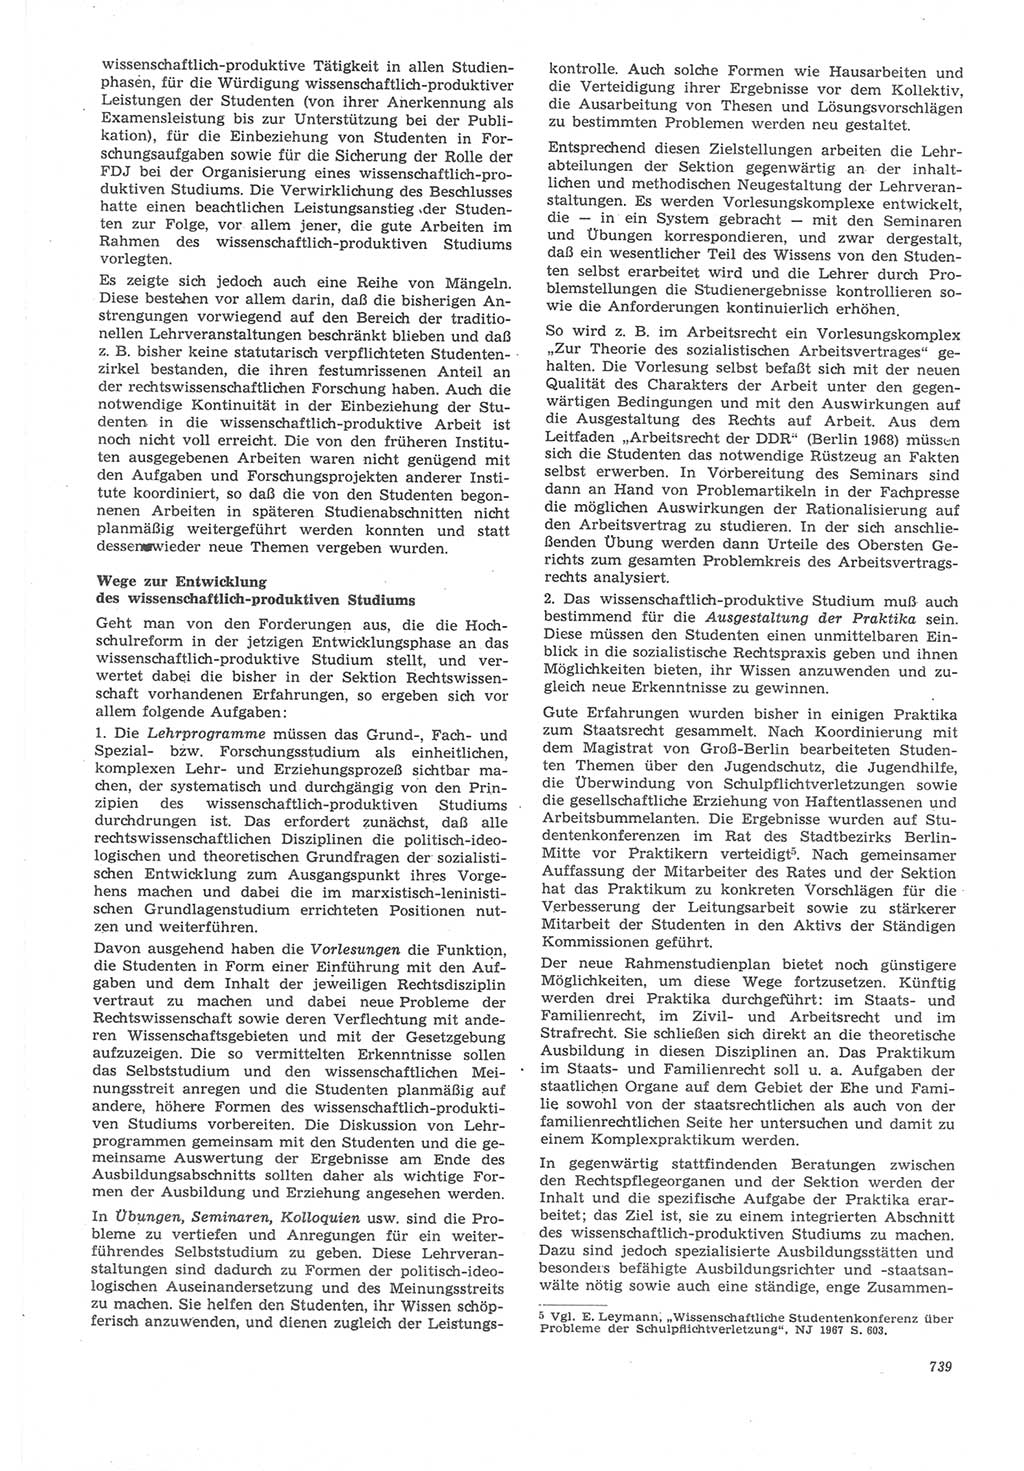 Neue Justiz (NJ), Zeitschrift für Recht und Rechtswissenschaft [Deutsche Demokratische Republik (DDR)], 22. Jahrgang 1968, Seite 739 (NJ DDR 1968, S. 739)